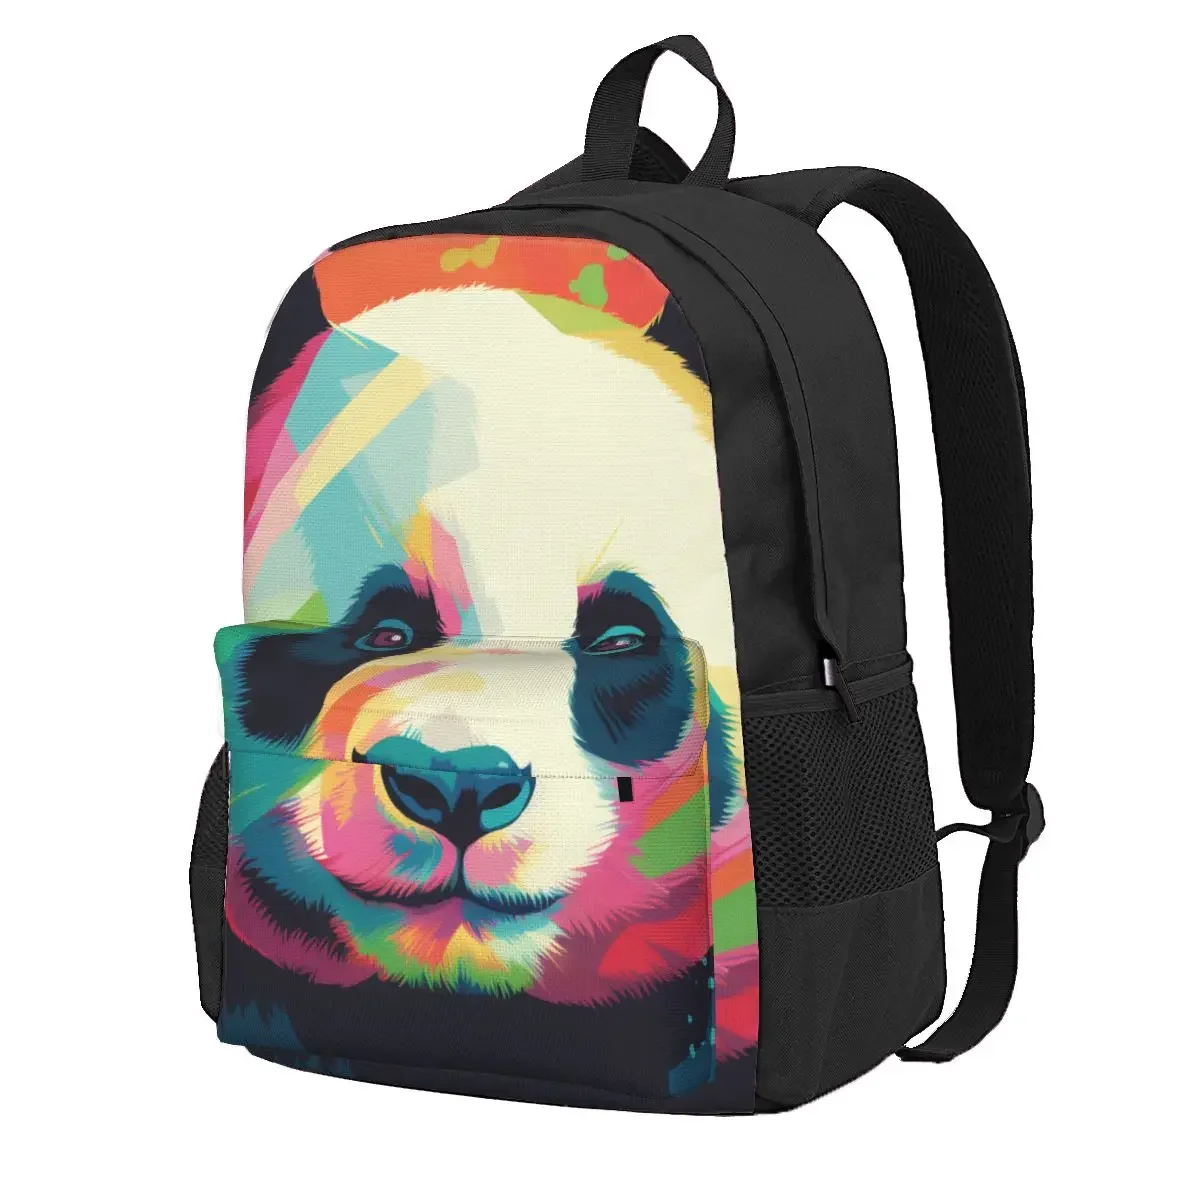 

Чехол для рюкзака с изображением панды, забавные рюкзаки с изображением нео-фавизма, школьные ранцы для студентов и кемпинга, высококачественный рюкзак